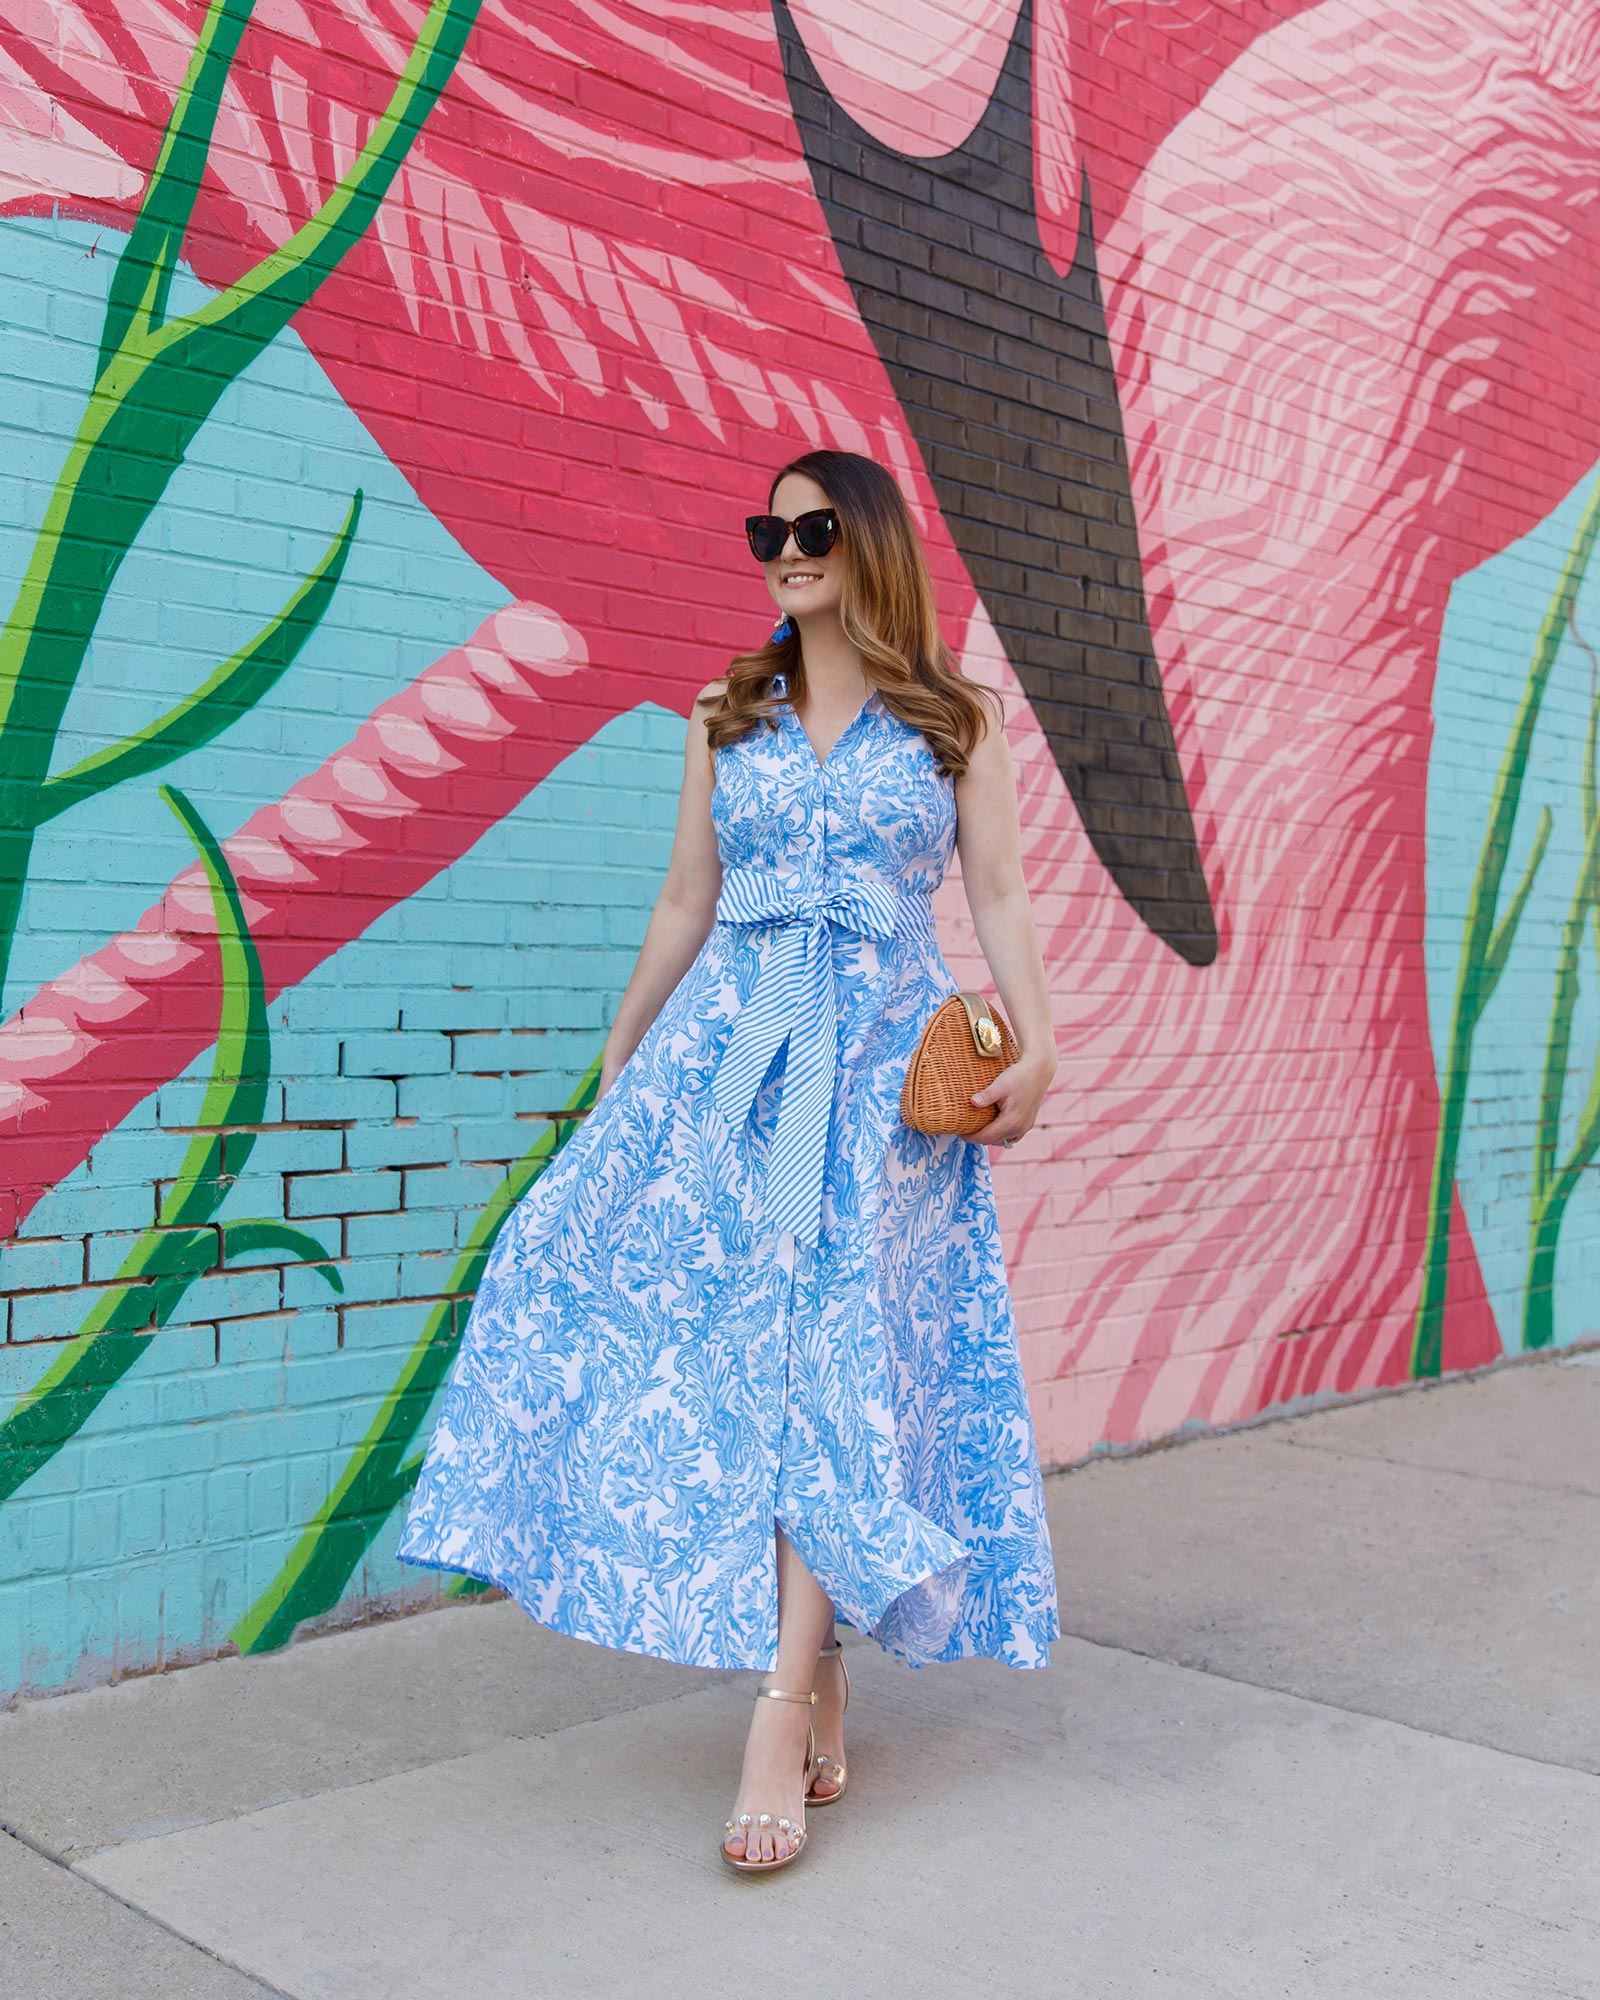 Jennifer Lake Lilly Pulitzer Blue Print Dress